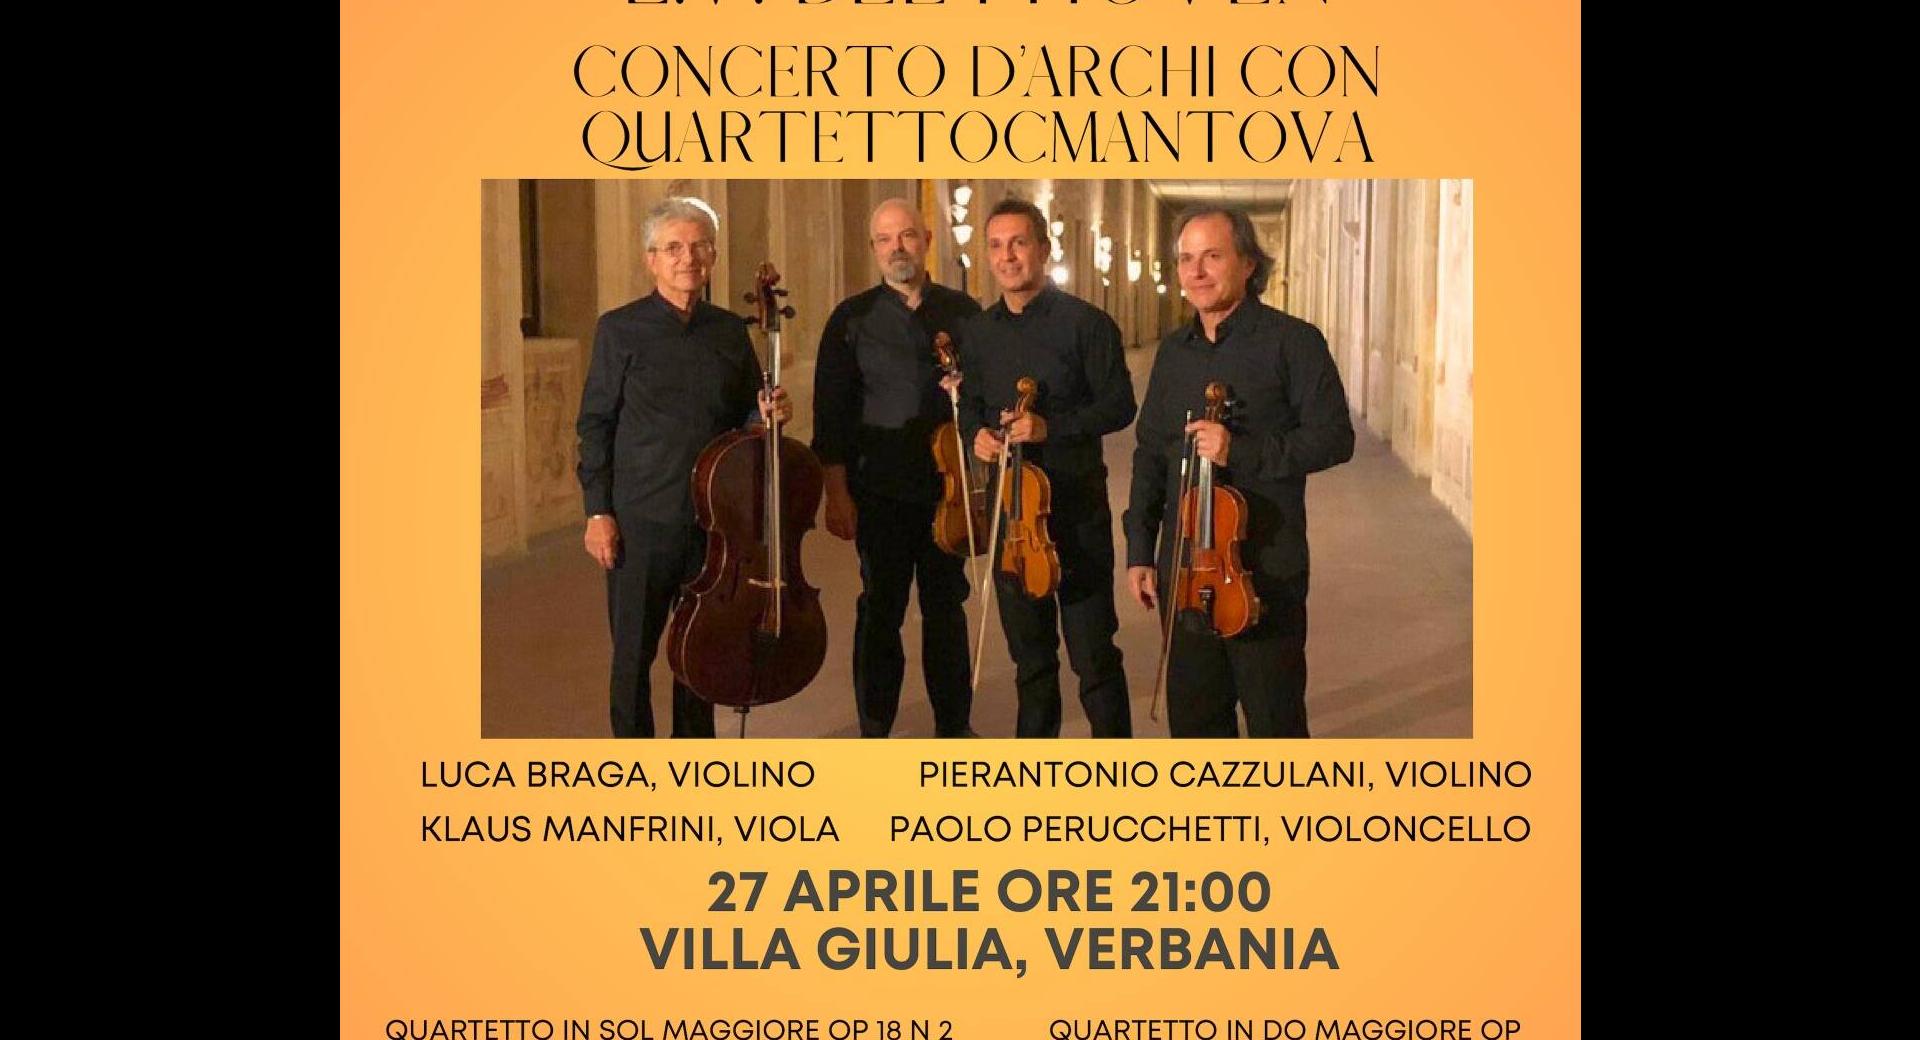 QuartettOCMantova diretto da Luca Braga 